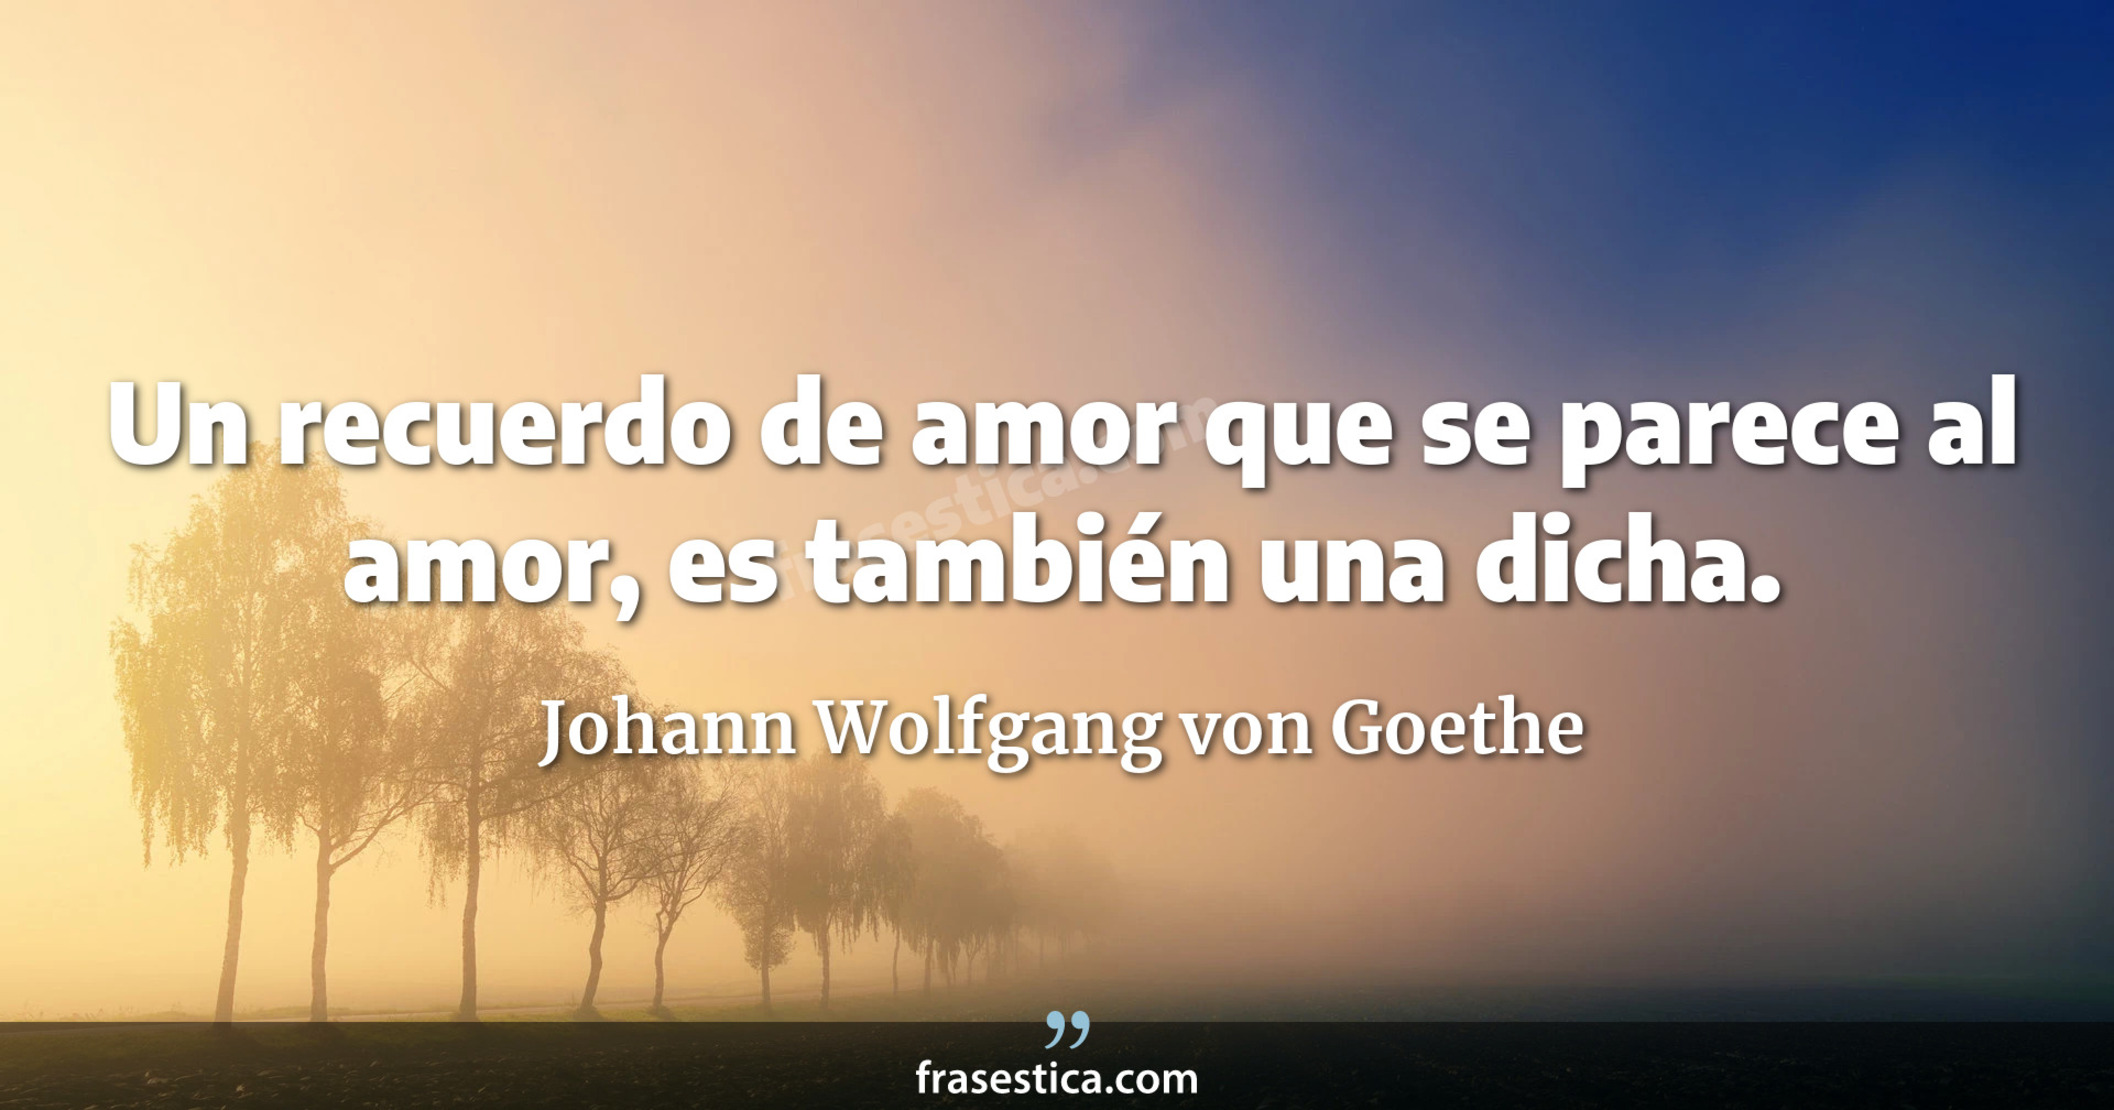 Un recuerdo de amor que se parece al amor, es también una dicha. - Johann Wolfgang von Goethe